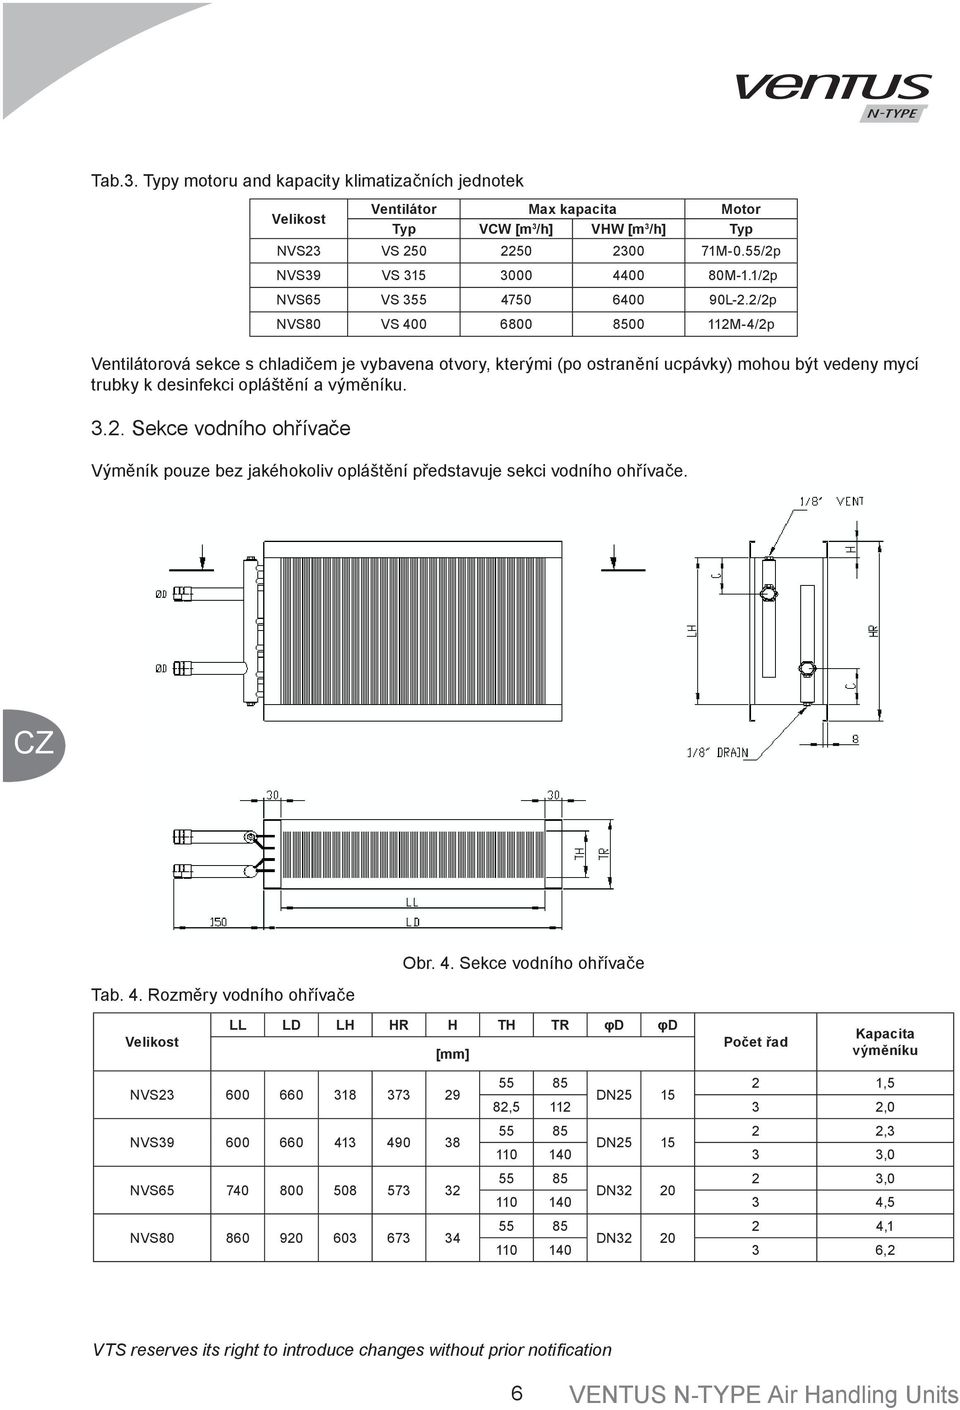 2/2p NVS80 VS 400 6800 8500 112M-4/2p Ventilátorová sekce s chladičem je vybavena otvory, kterými (po ostranění ucpávky) mohou být vedeny mycí trubky k desinfekci opláštění a výměníku. 3.2. Sekce vodního ohřívače Výměník pouze bez jakéhokoliv opláštění představuje sekci vodního ohřívače.